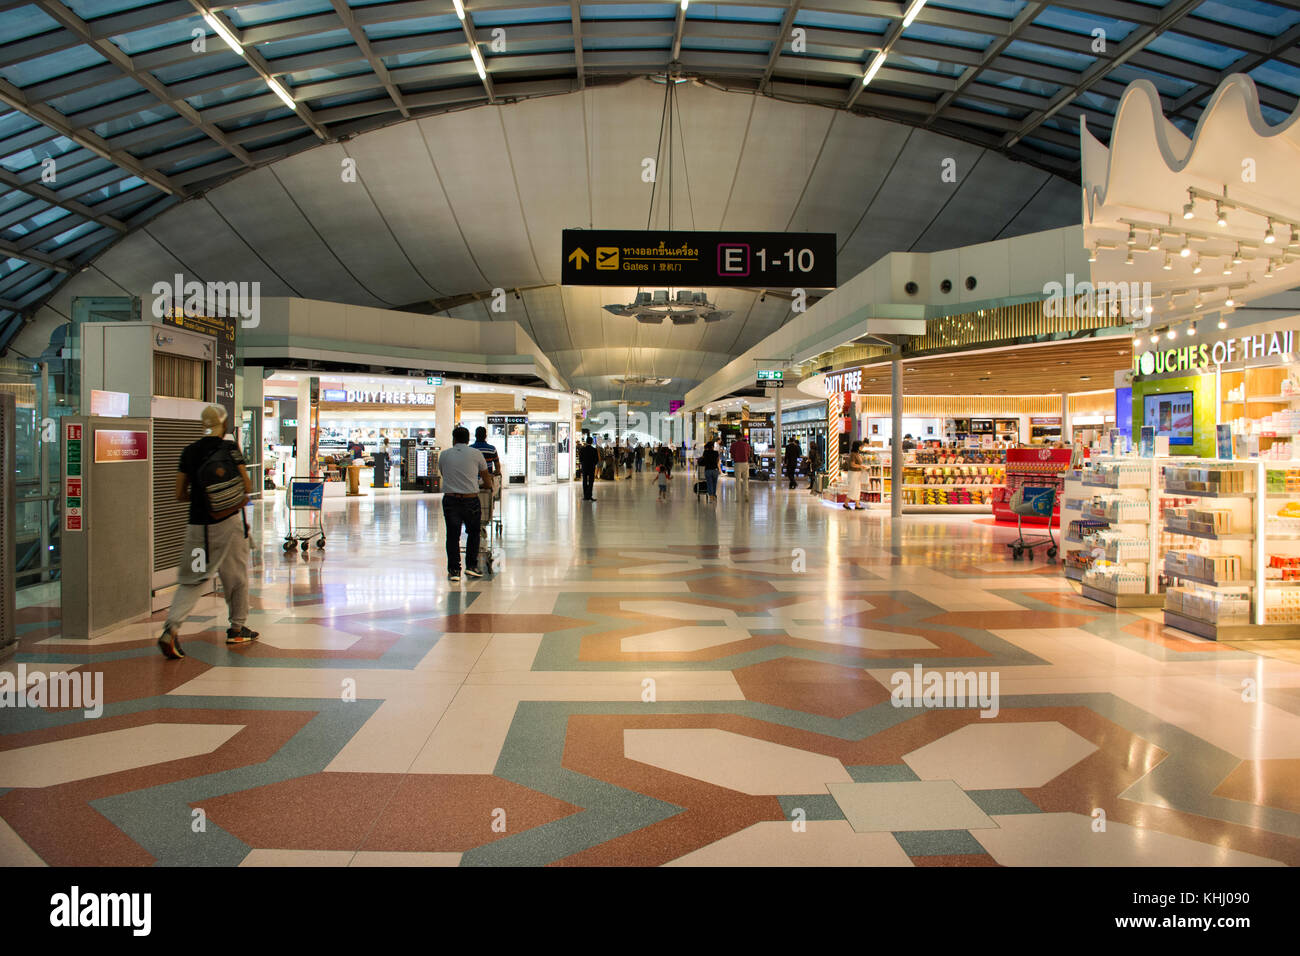 Duty free shop bangkok airport fotografías e imágenes de alta resolución -  Página 2 - Alamy